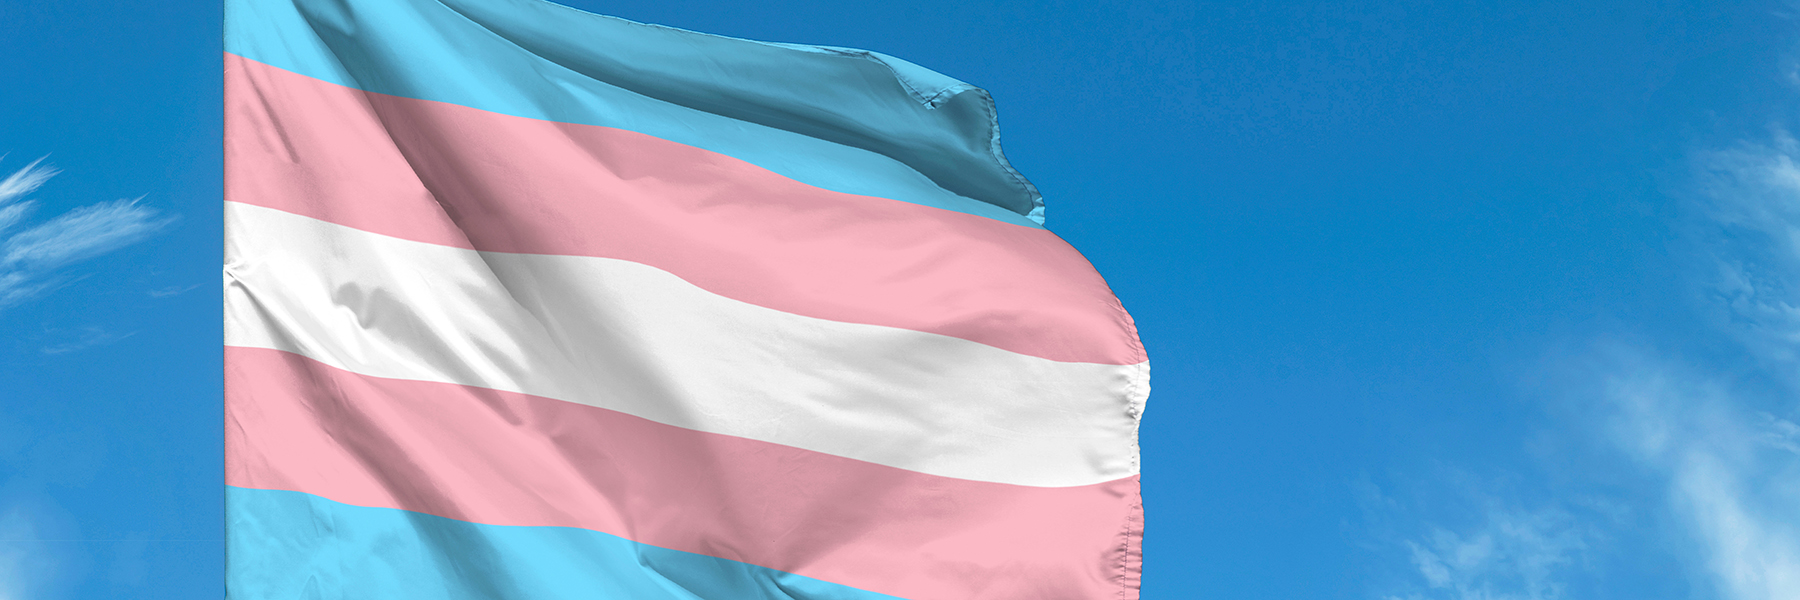 Transgender flag waving against blue sky,